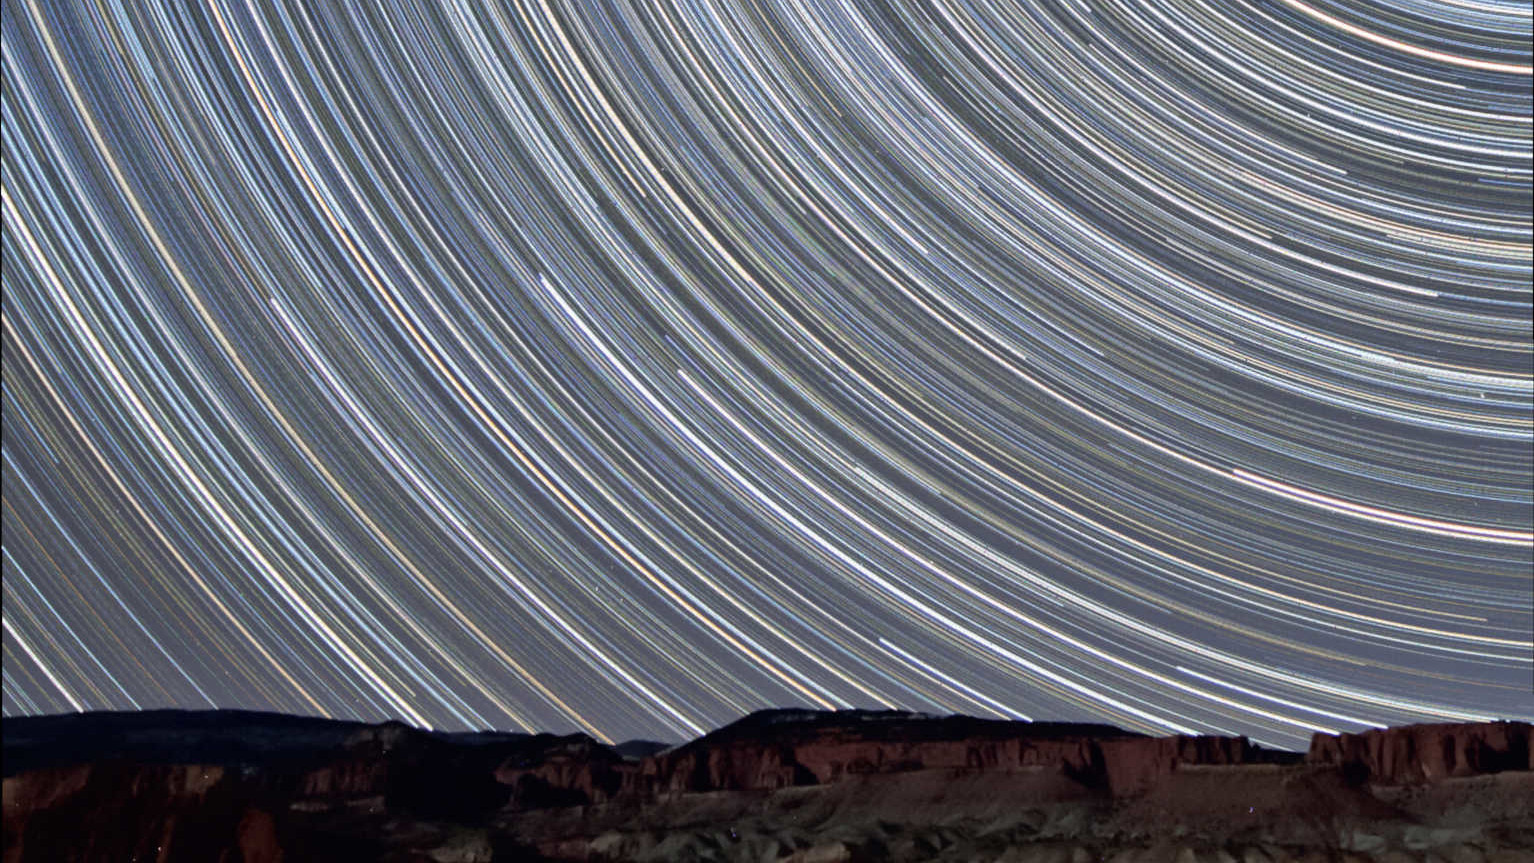 Cette photo de filés d’étoiles montrant la migration des étoiles au-dessus des rochers de grès rouge éclairés par la Lune ascendante a été réalisée à quelques kilomètres du parc national Capitol Reef d’Utah (États-Unis), regard tourné vers le nord. Cet empilement d’images regroupe 350 prises de vues réalisées avec un temps d’exposition de 90 secondes chacune (temps d’exposition total : 525 minutes = 8,75 heures). Cette photo a été obtenue avec un objectif de 10-20 mm (à 10 mm et f/4) sur un réflex numérique Canon du type 450D. U. Dittler